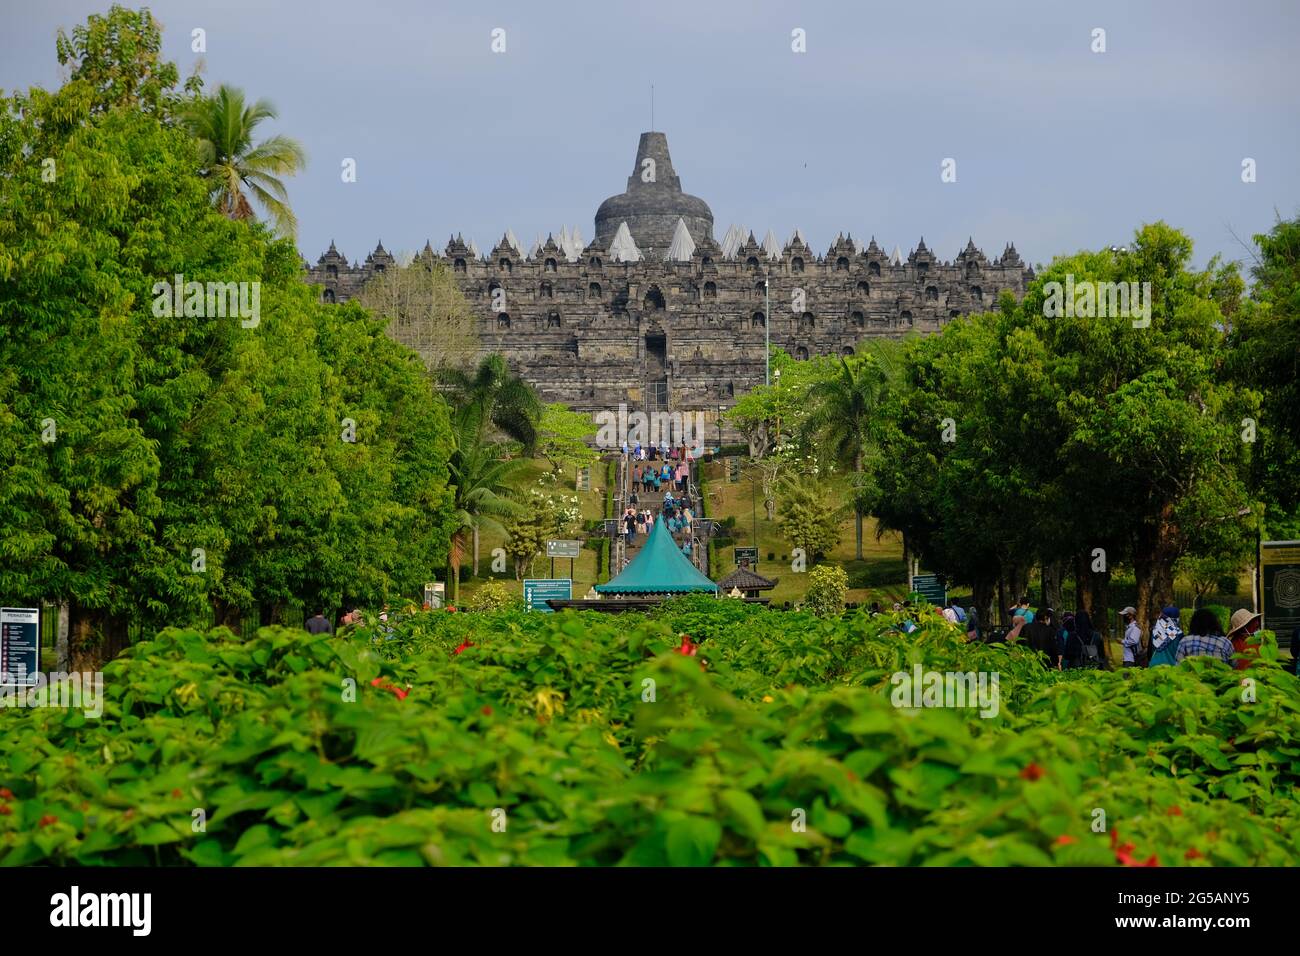 Indonesien Yogyakarta - Buddhistischer Borobudur-Tempel - Candi Borobudur Stockfoto